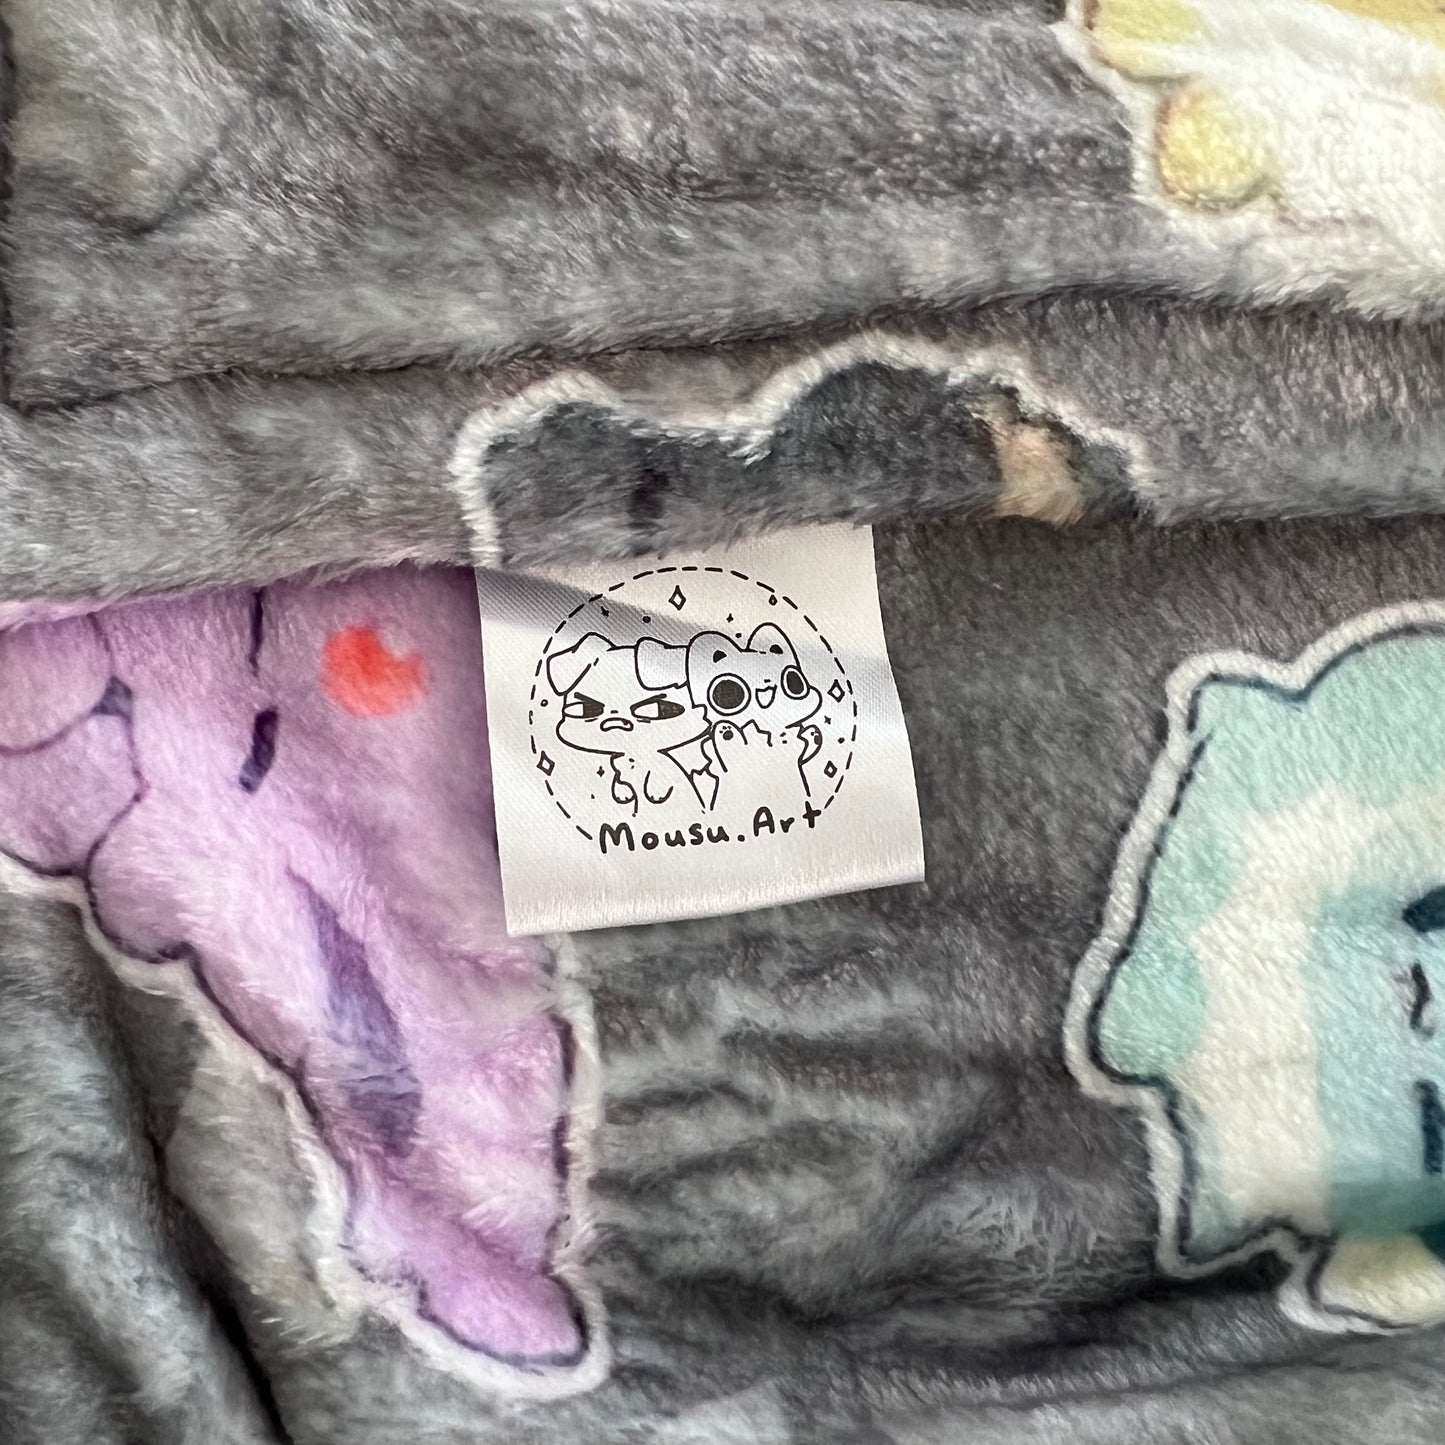 Cute Fleece Blanket - Eeveelution - 40in x 60in